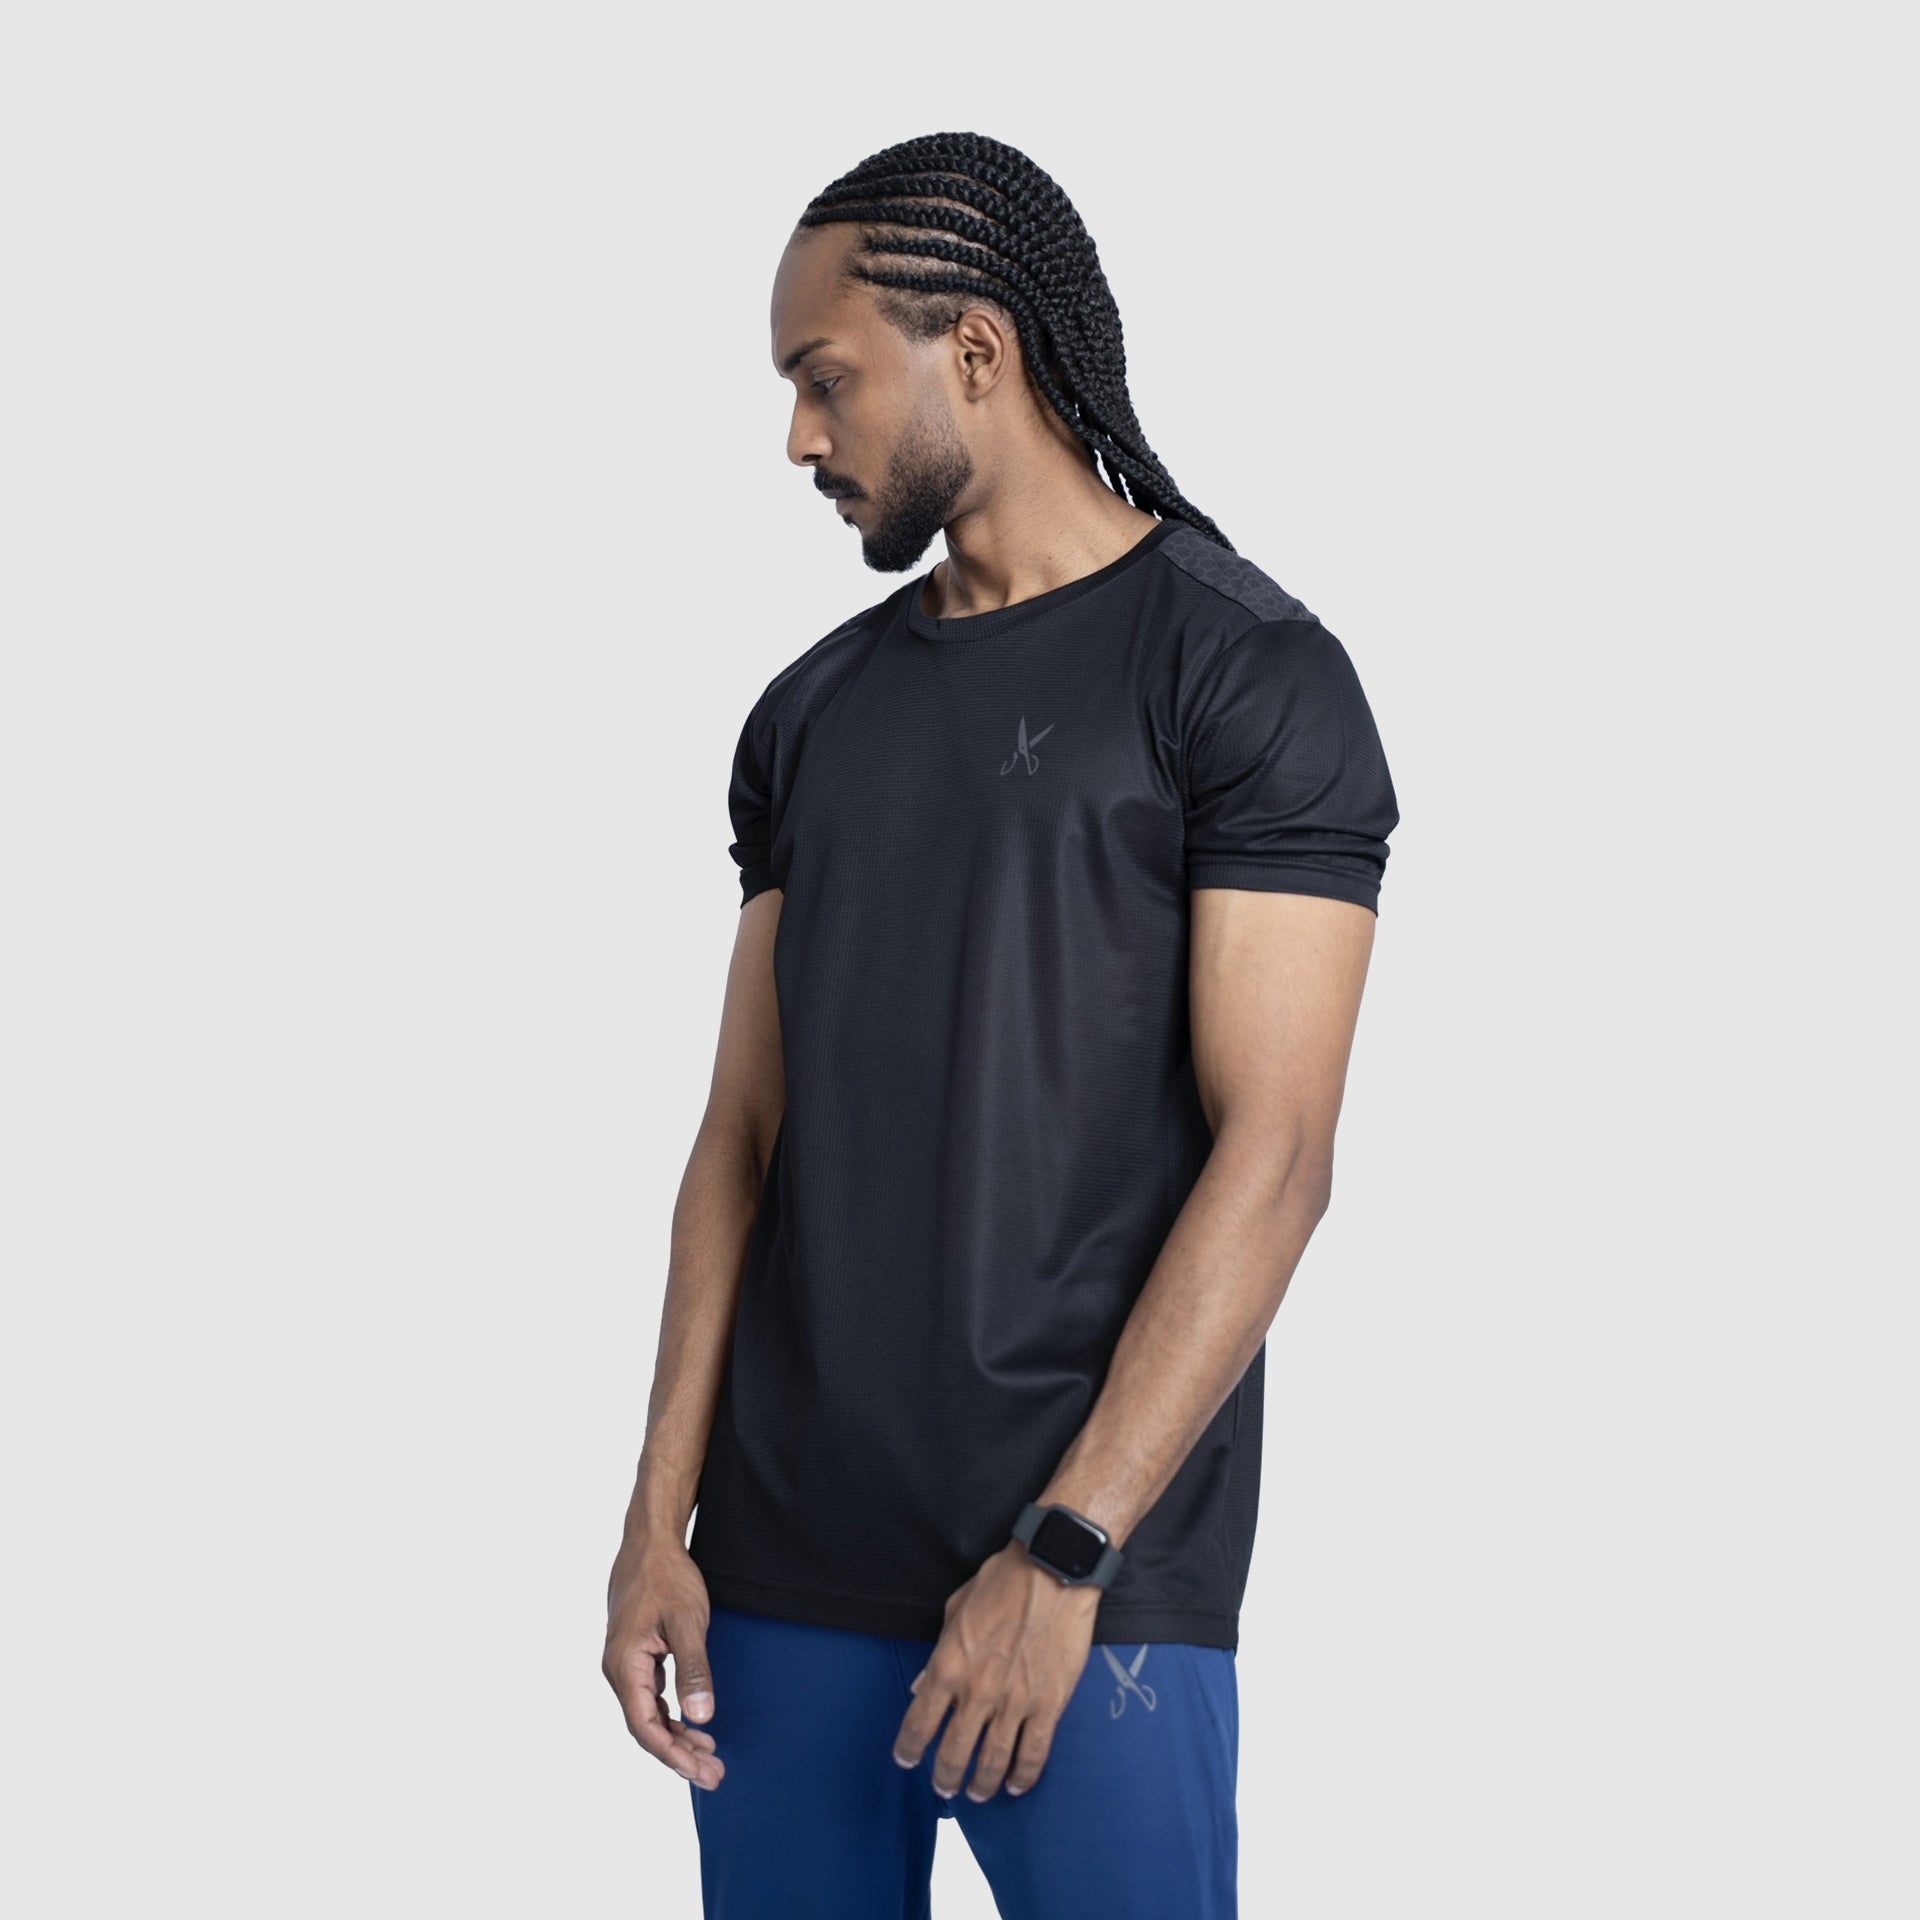 Black Sport T-shirt From Weaver Design